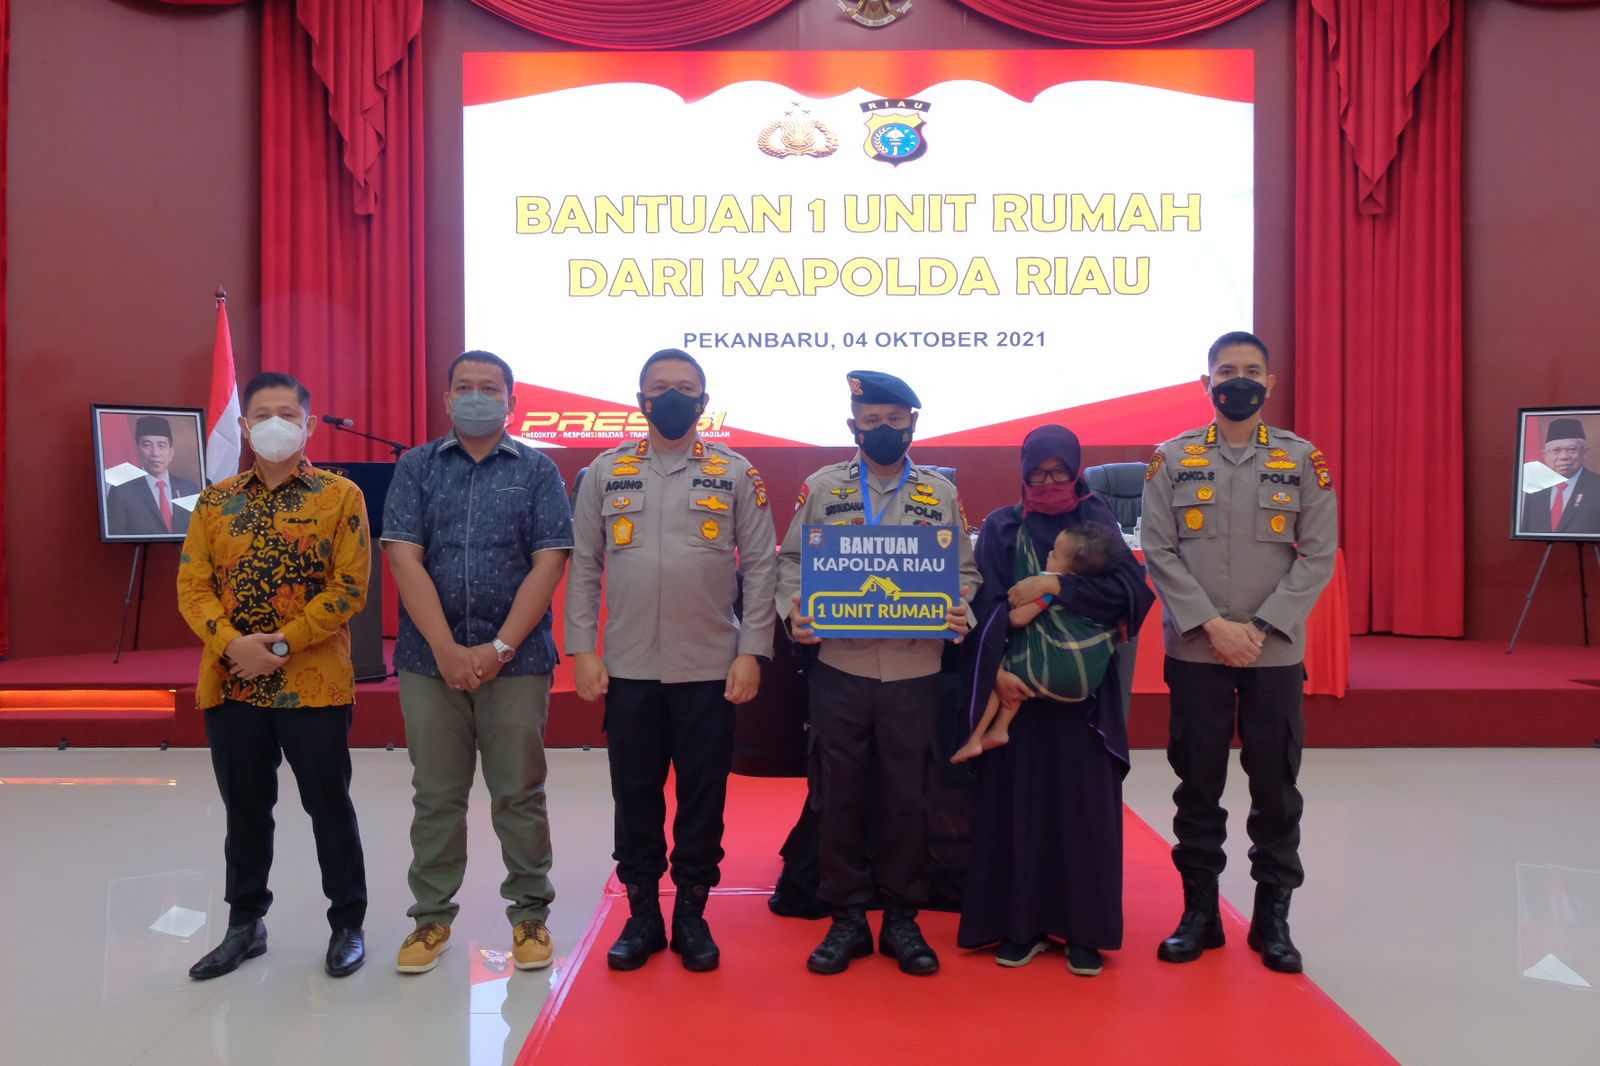 Jelang Pensiun, Personel Brimob Menangis Dapat Rumah dari Kapolda Riau